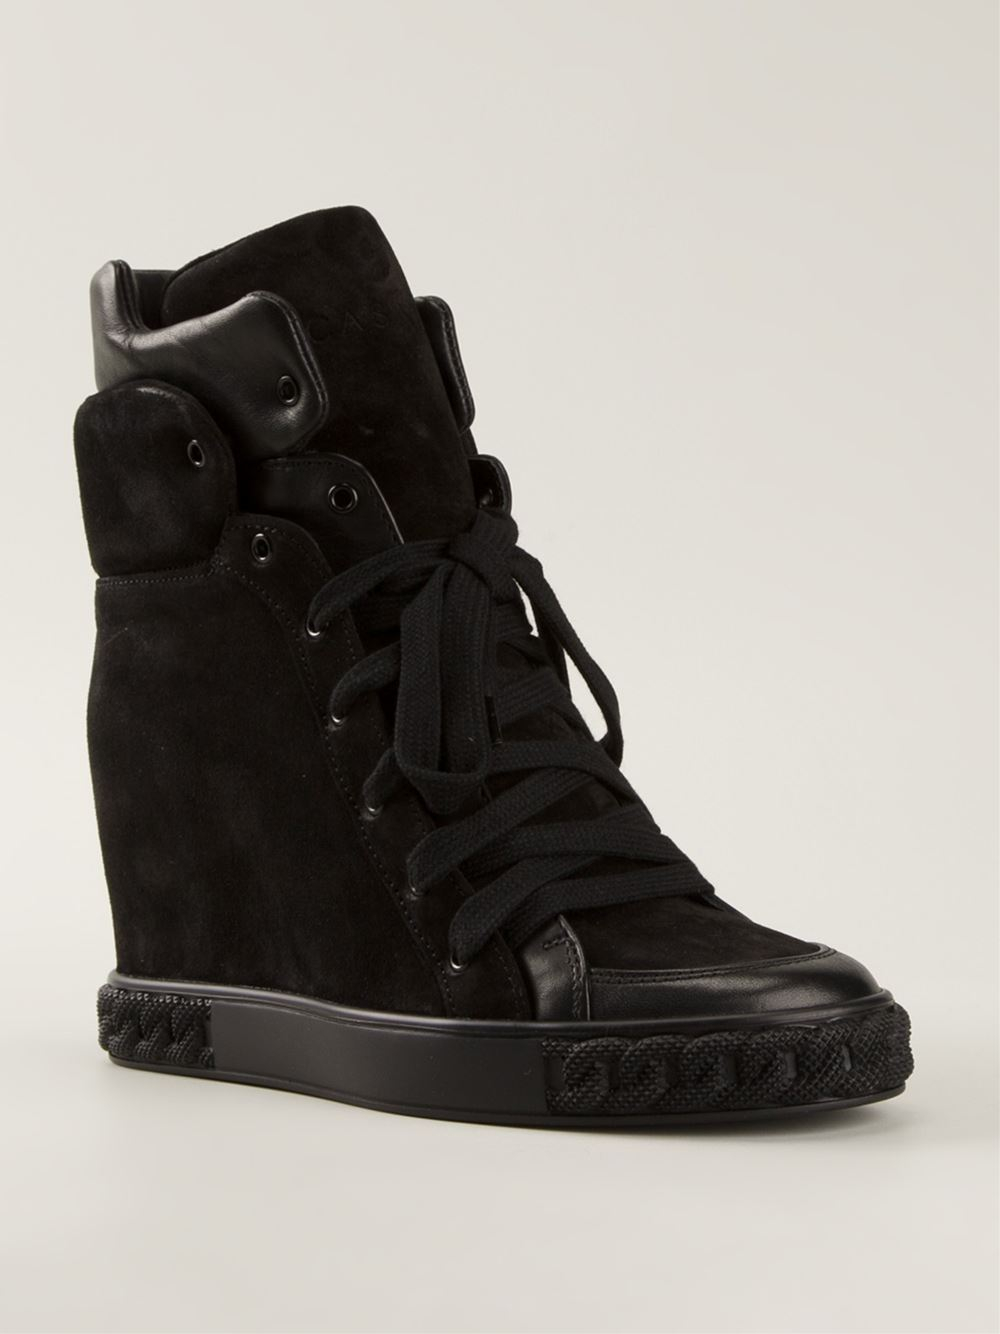 Lyst - Casadei Wedge Sneakers in Black